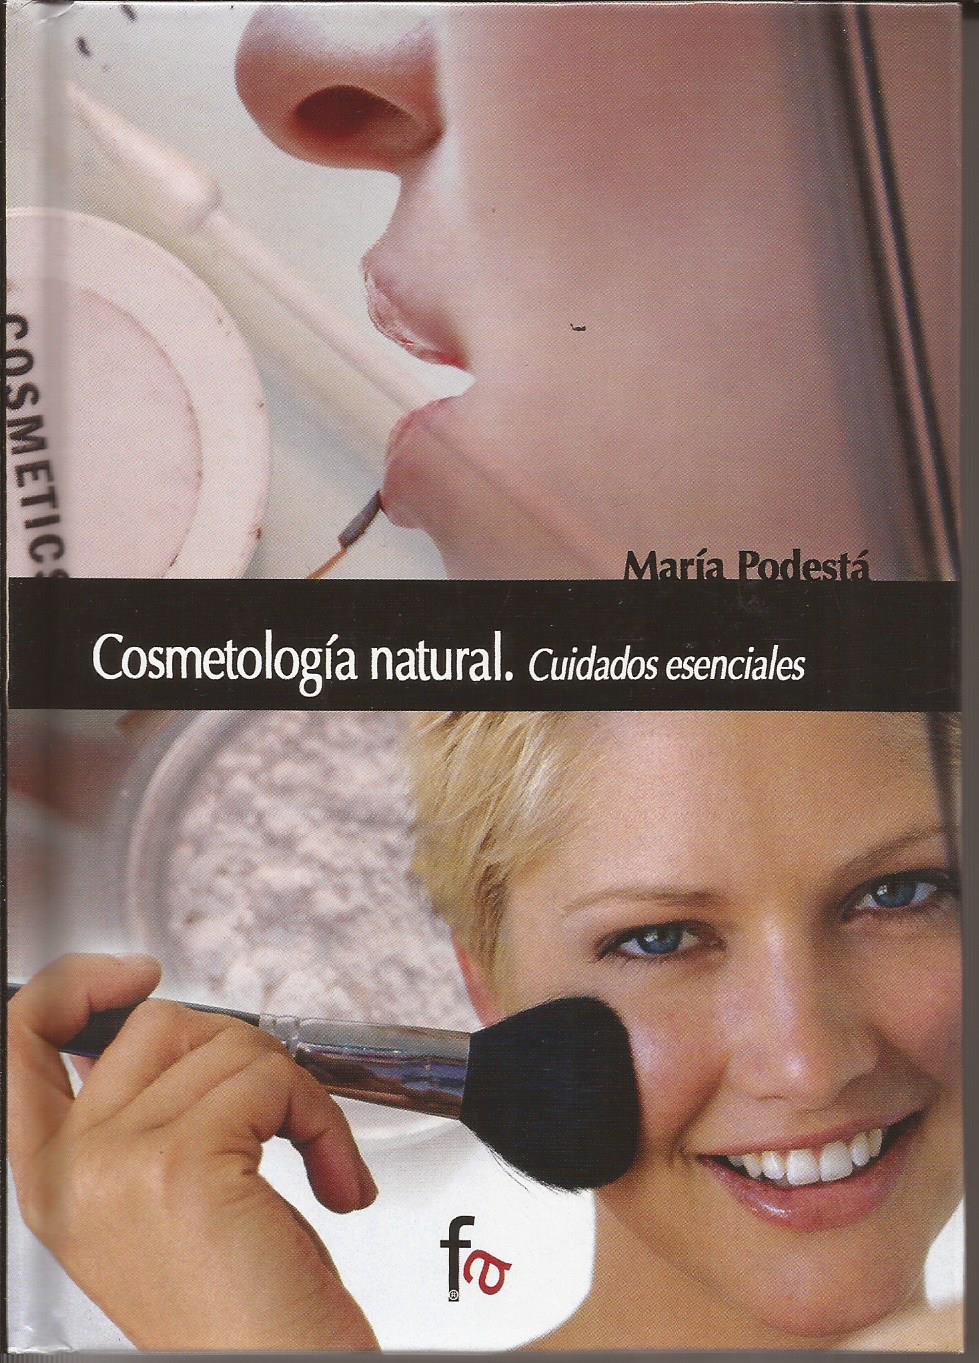 Cosmetología natural - Podestá, María